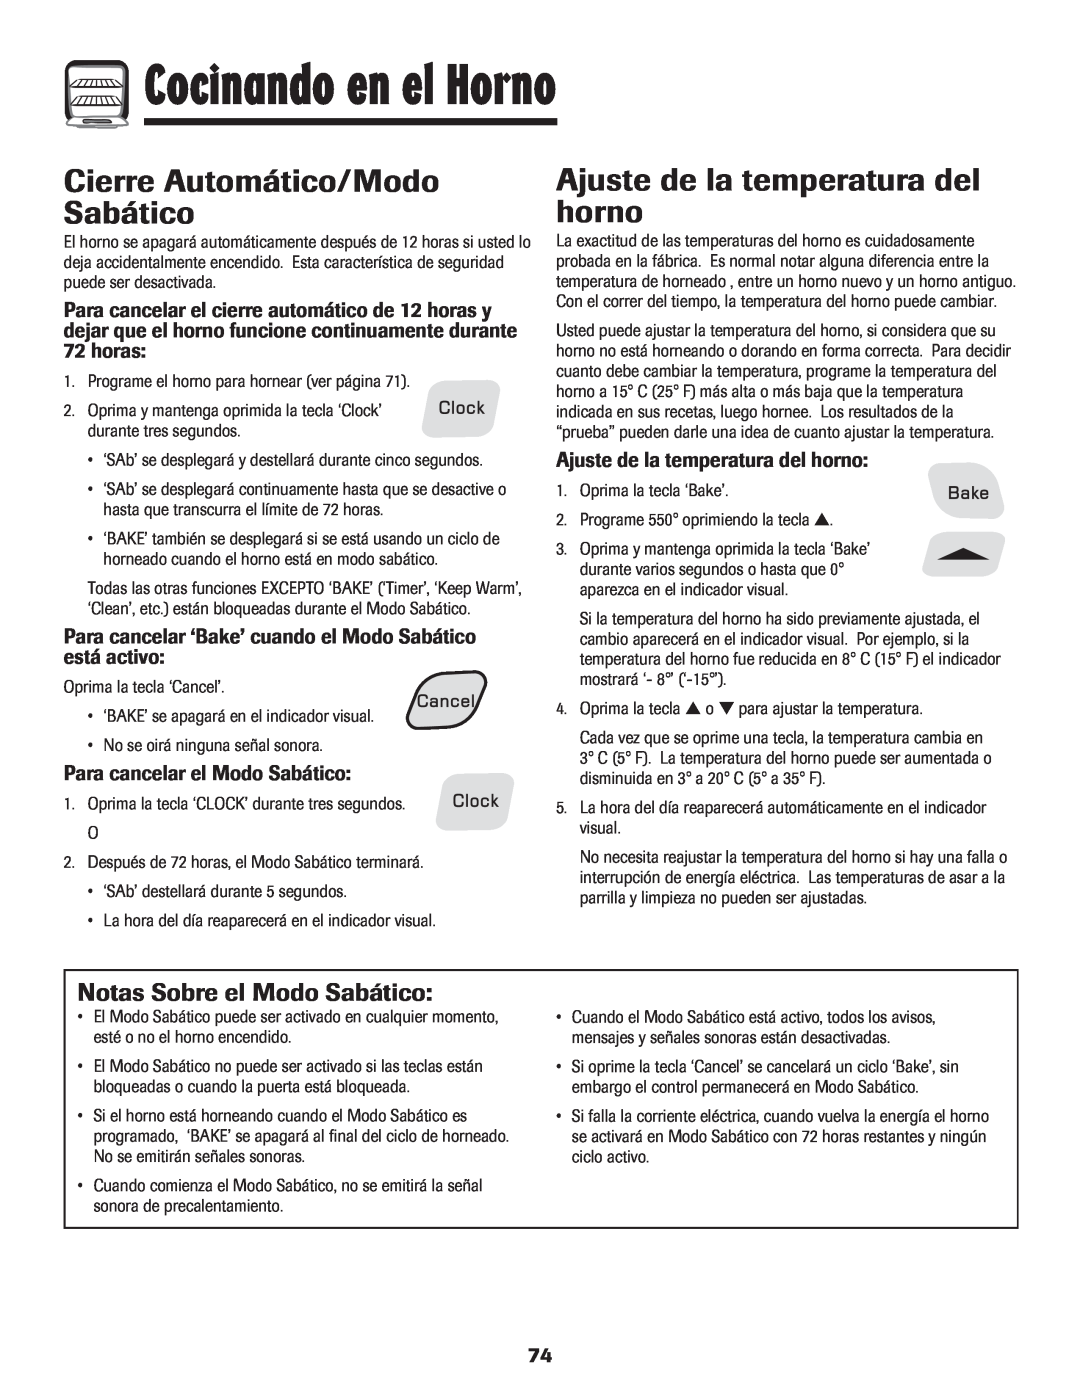 Amana 8113P515-60 Cierre Automático/Modo Sabático, Ajuste de la temperatura del horno, Notas Sobre el Modo Sabático, horas 